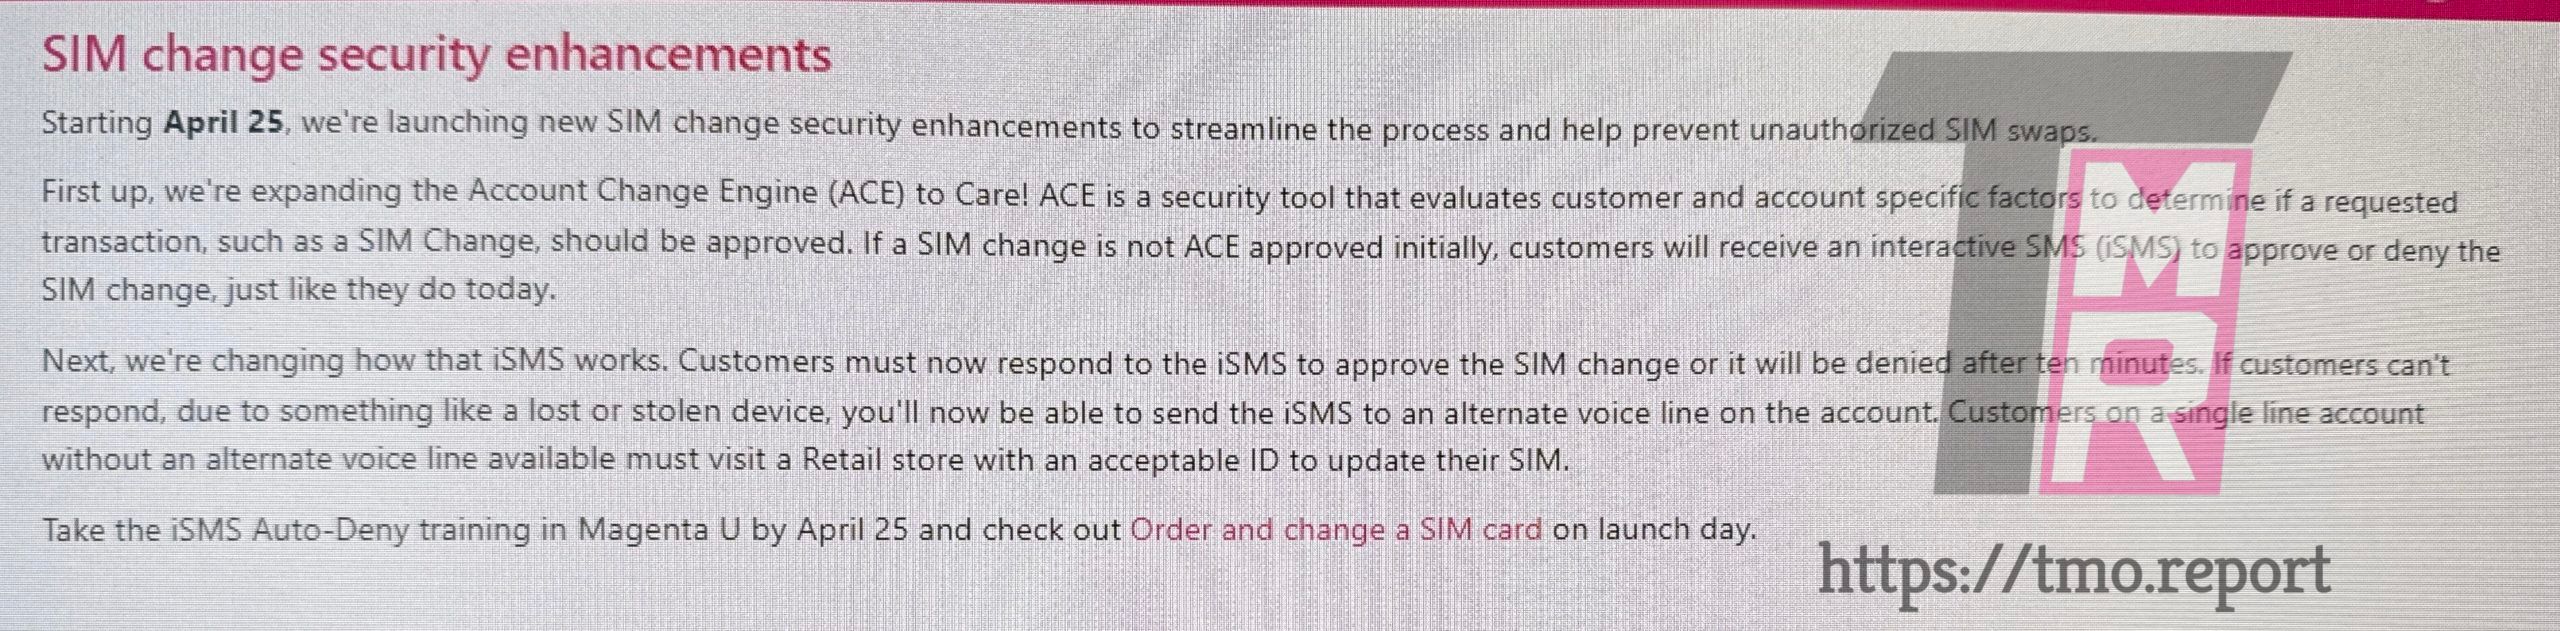 Captura de tela de uma mudança na política de segurança do SIM da T-Mobile